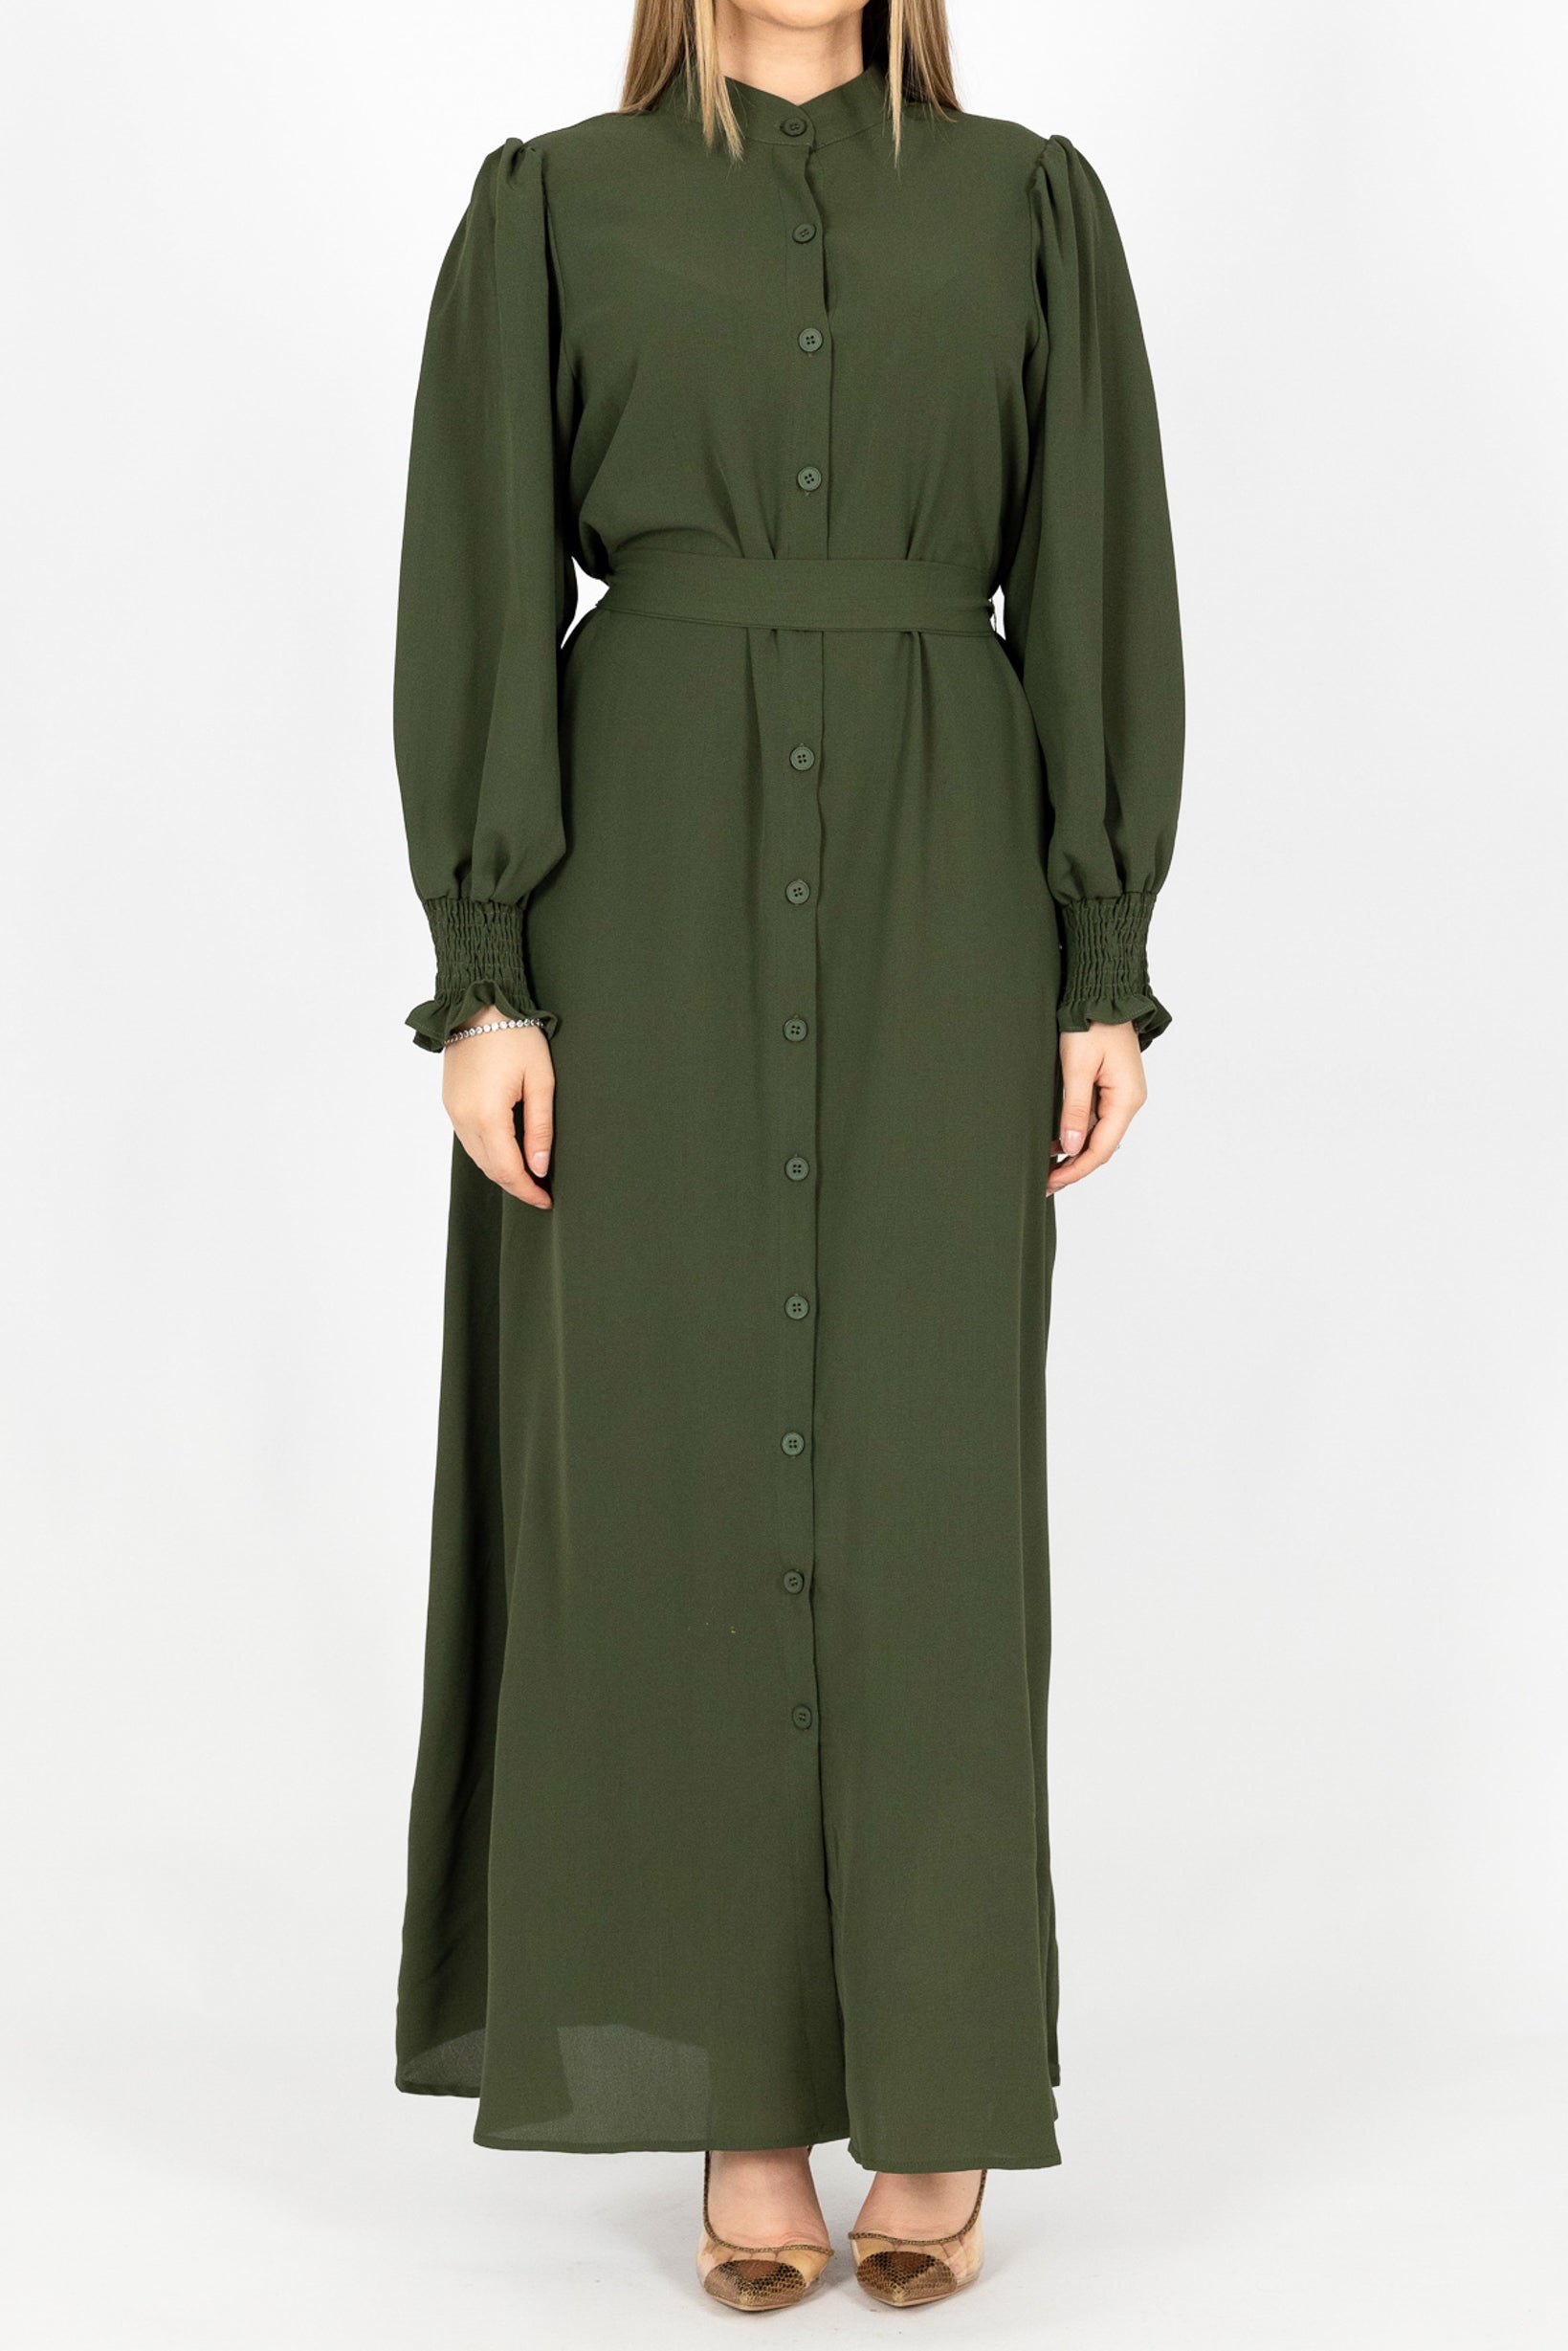 M7975Khaki-dress-abaya